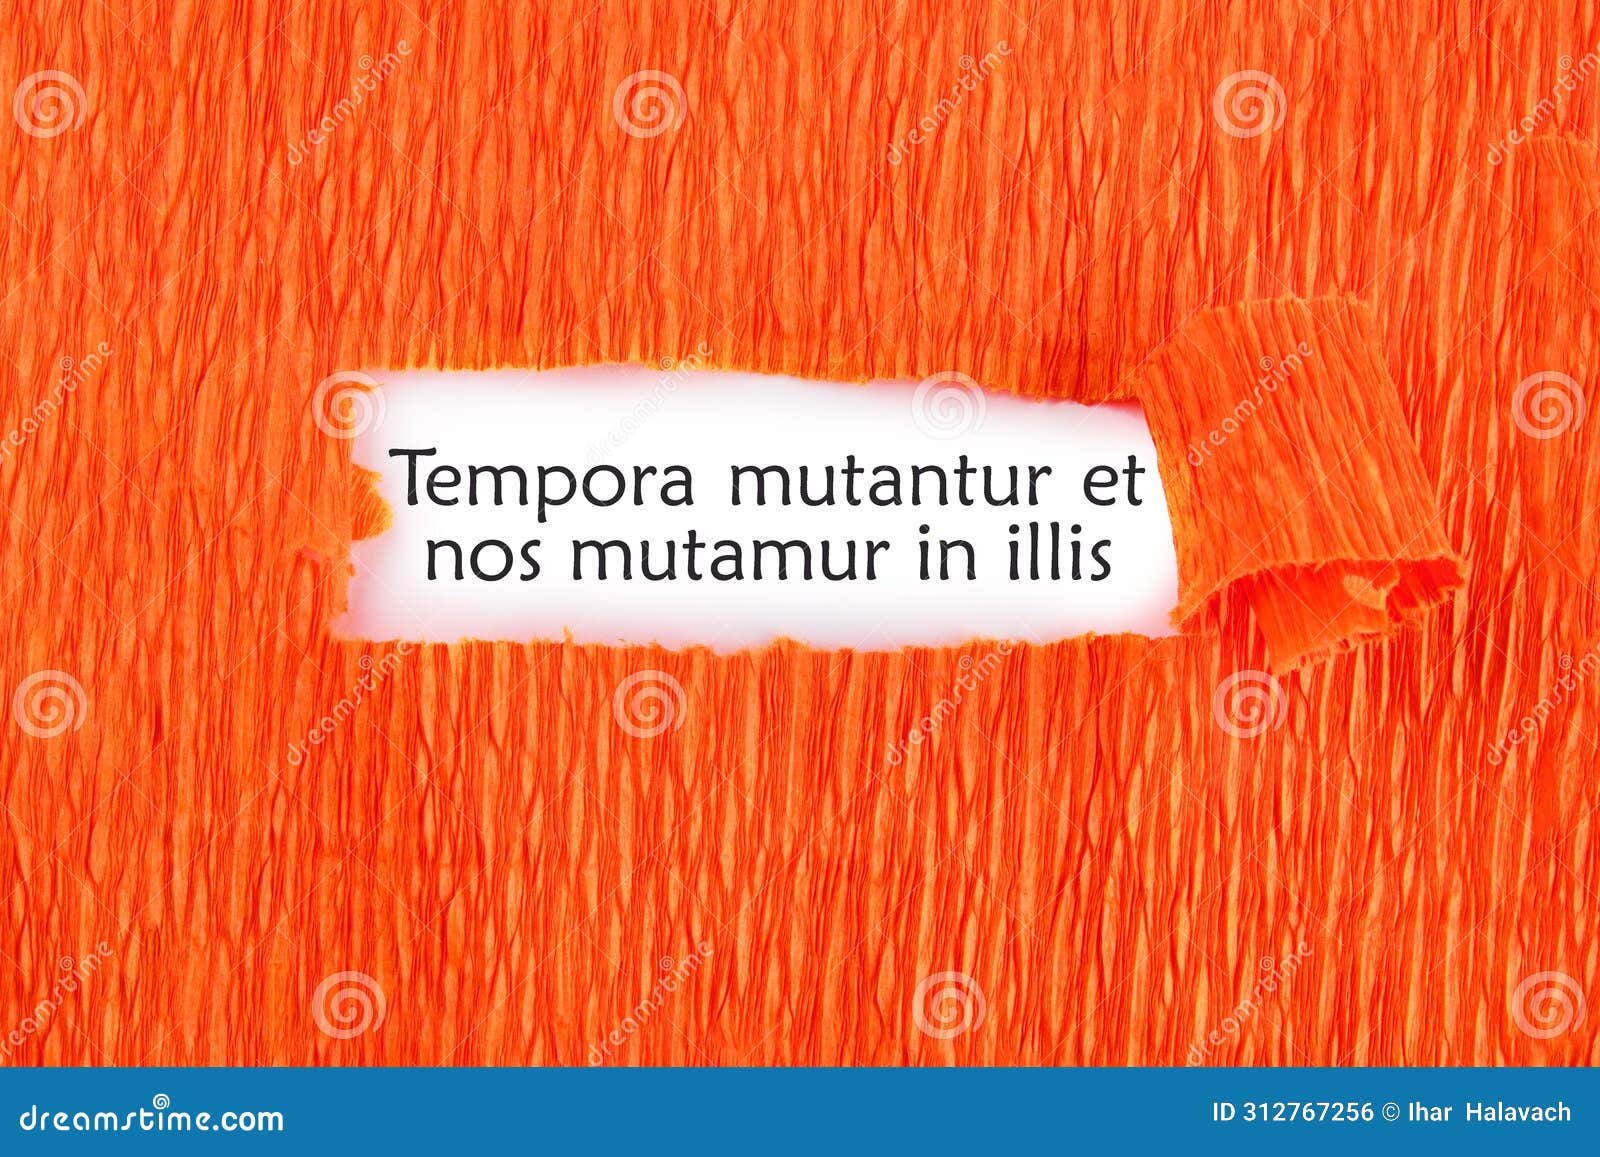 tempora mutantur et nos mutamur in illis translated from latin